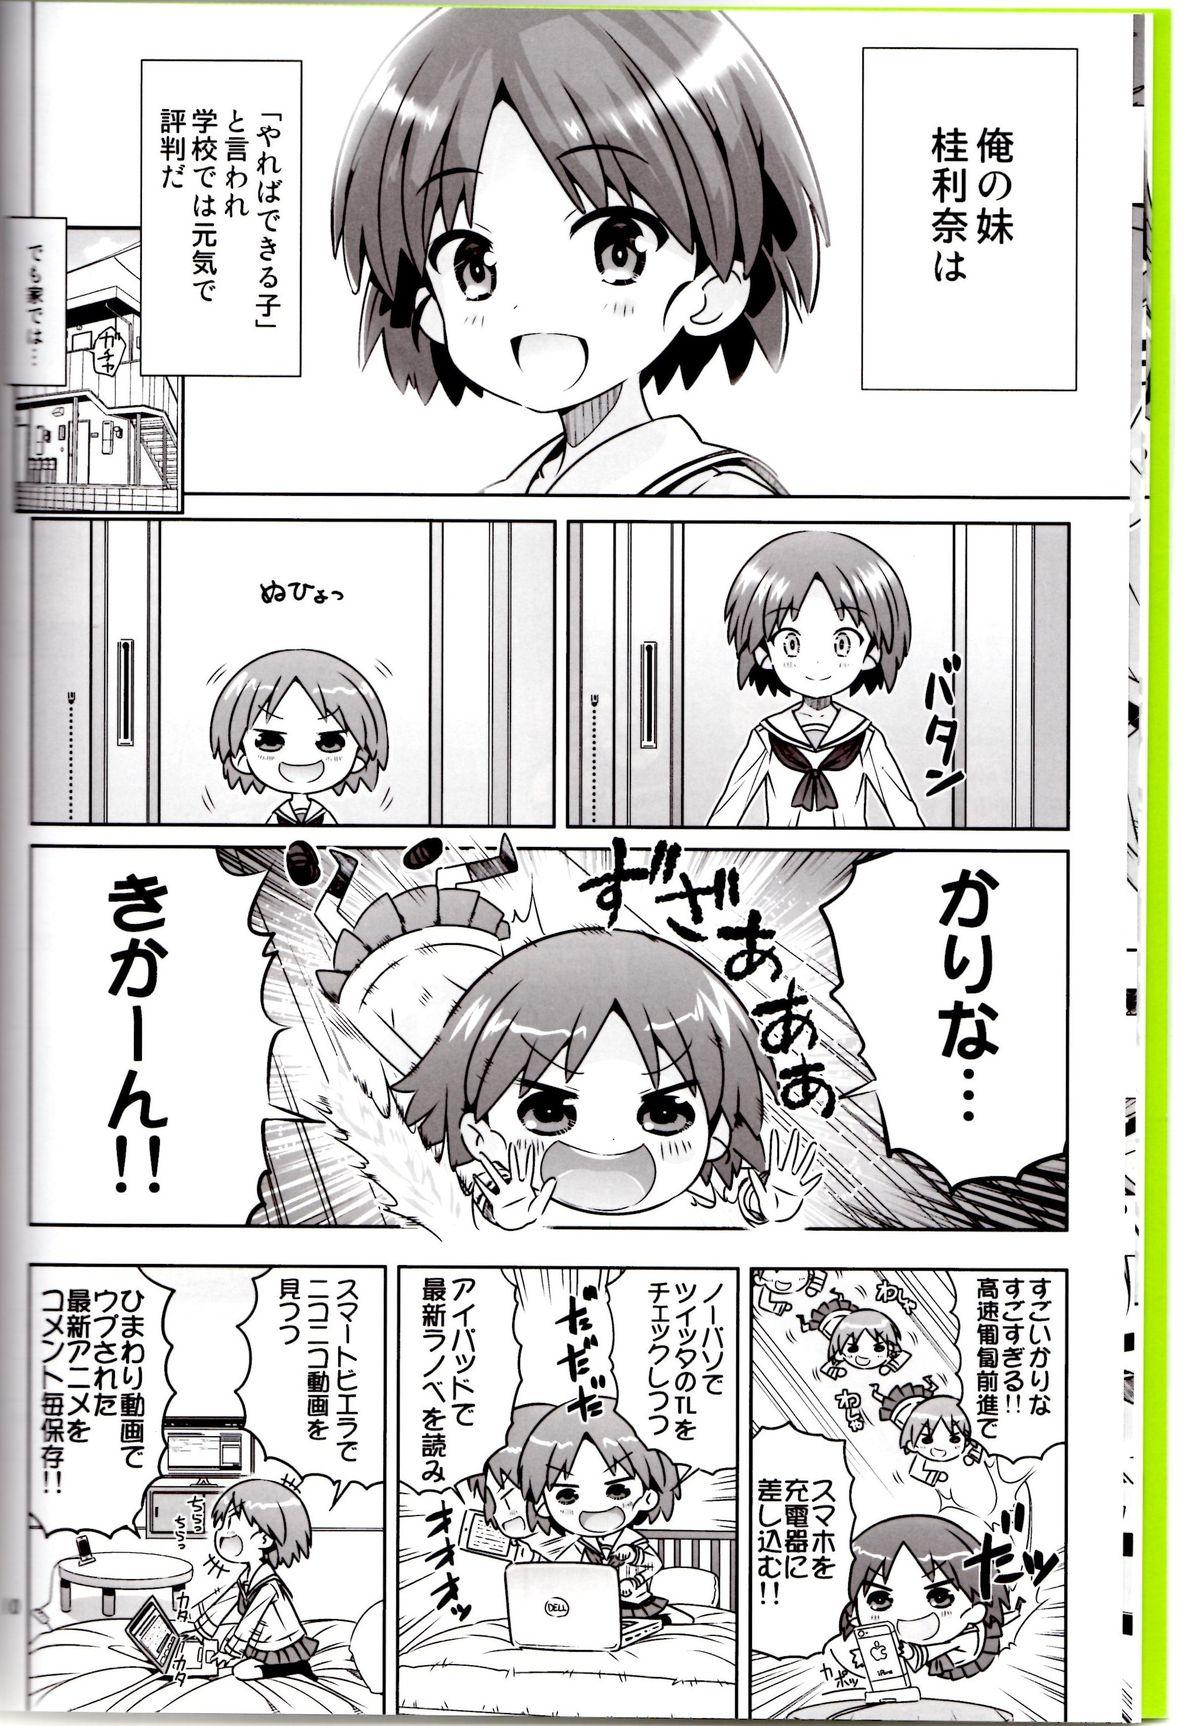 Calle "AV Shutsuen, Ganbarimasu!!" Ichinensei wa, M-ji Kaikyaku 3 Peace desu! - Girls und panzer Worship - Page 7